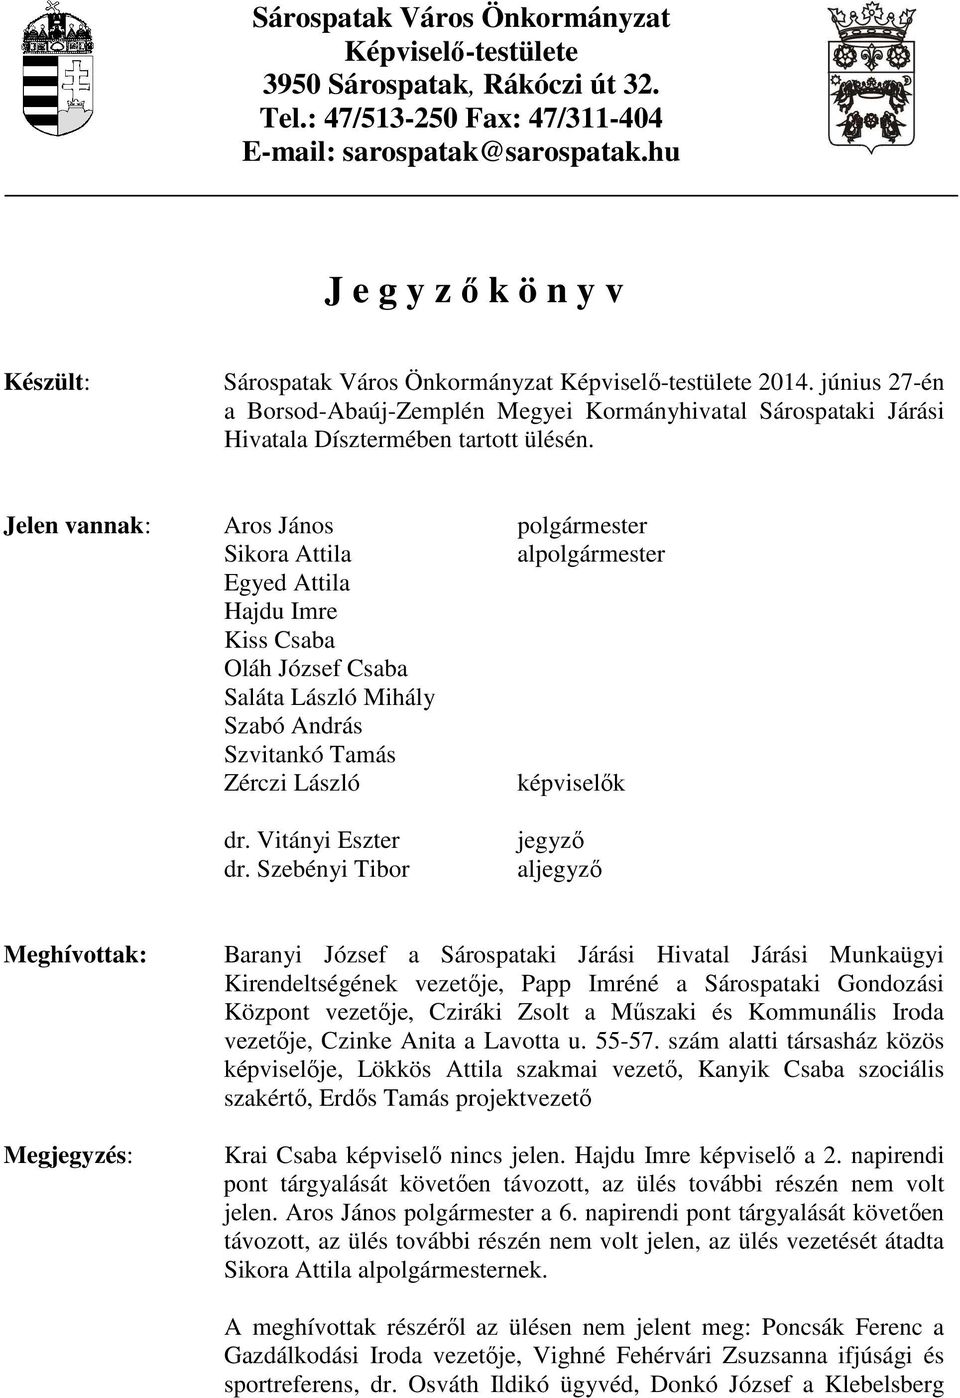 június 27-én a Borsod-Abaúj-Zemplén Megyei Kormányhivatal Sárospataki Járási Hivatala Dísztermében tartott ülésén.